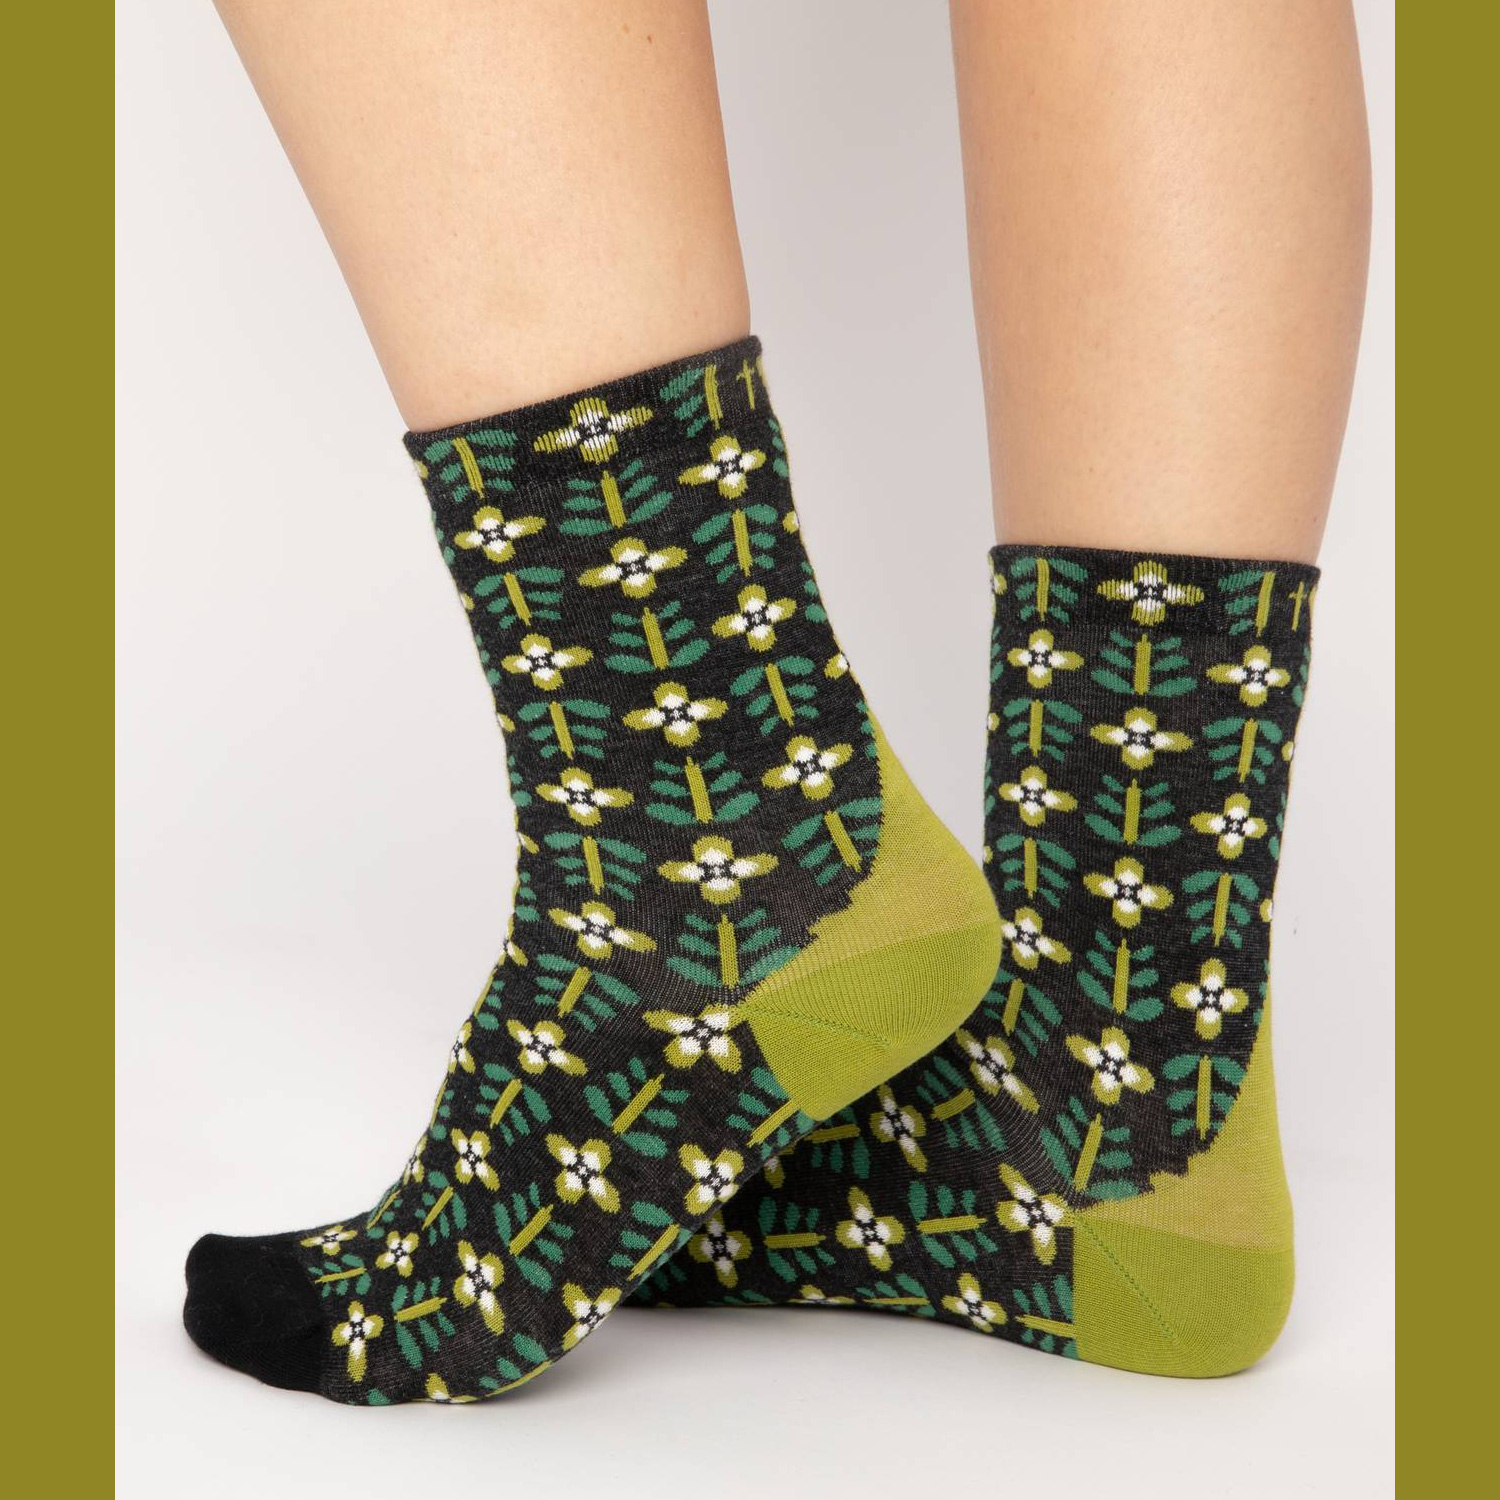  Blutsgeschwister Socken sensational steps , One Size ( ca. 38 - 40 ), my green footprint